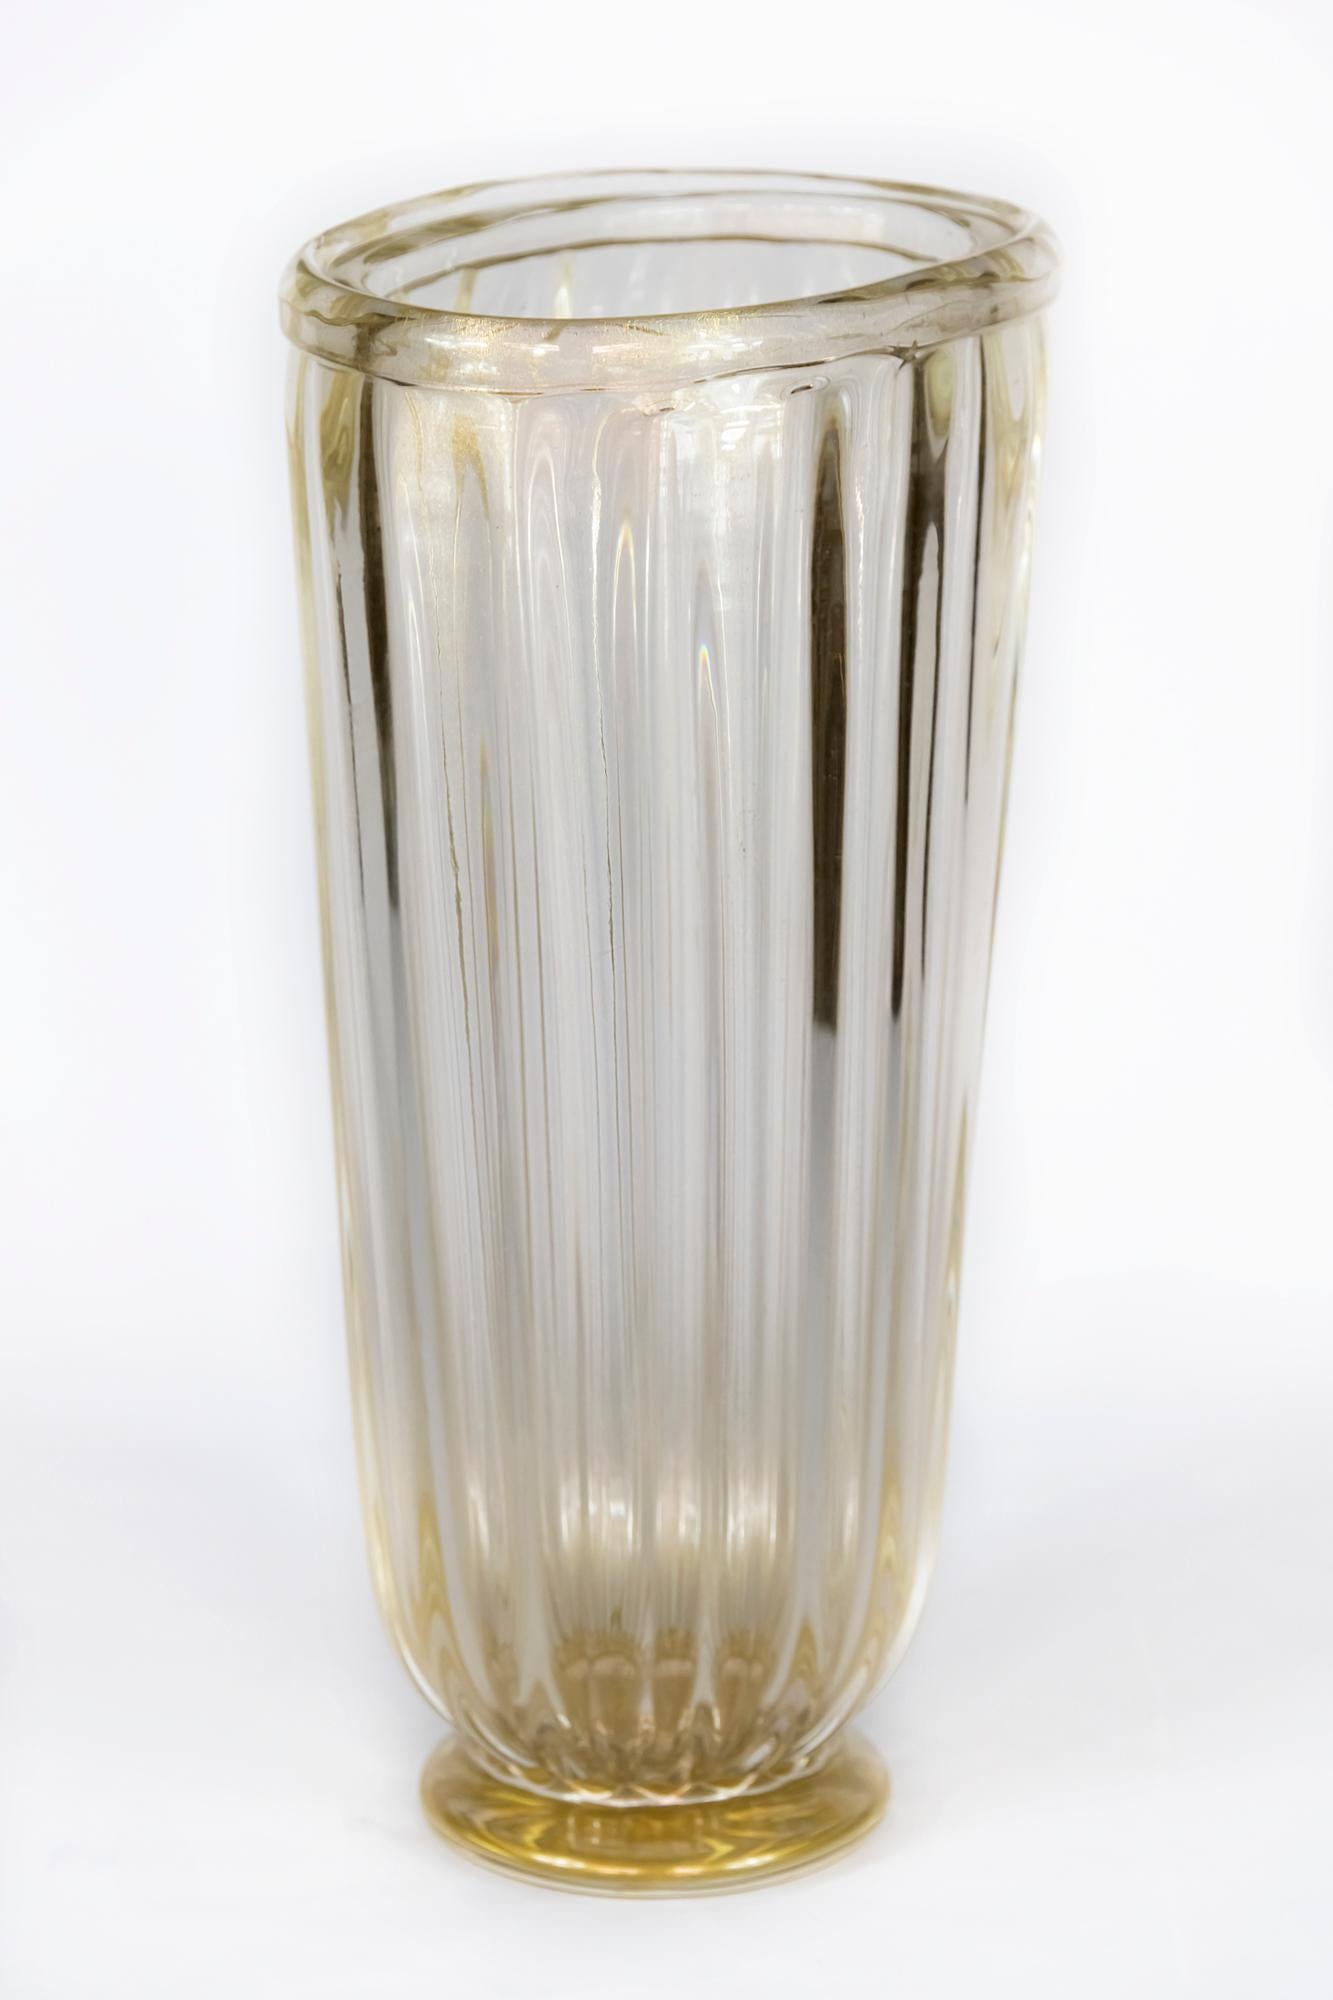 Ce vase de forme assymétrique/ovale, fabriqué à la main en Italie, est en verre de Murano transparent avec de la poussière d'or incrustée.
 